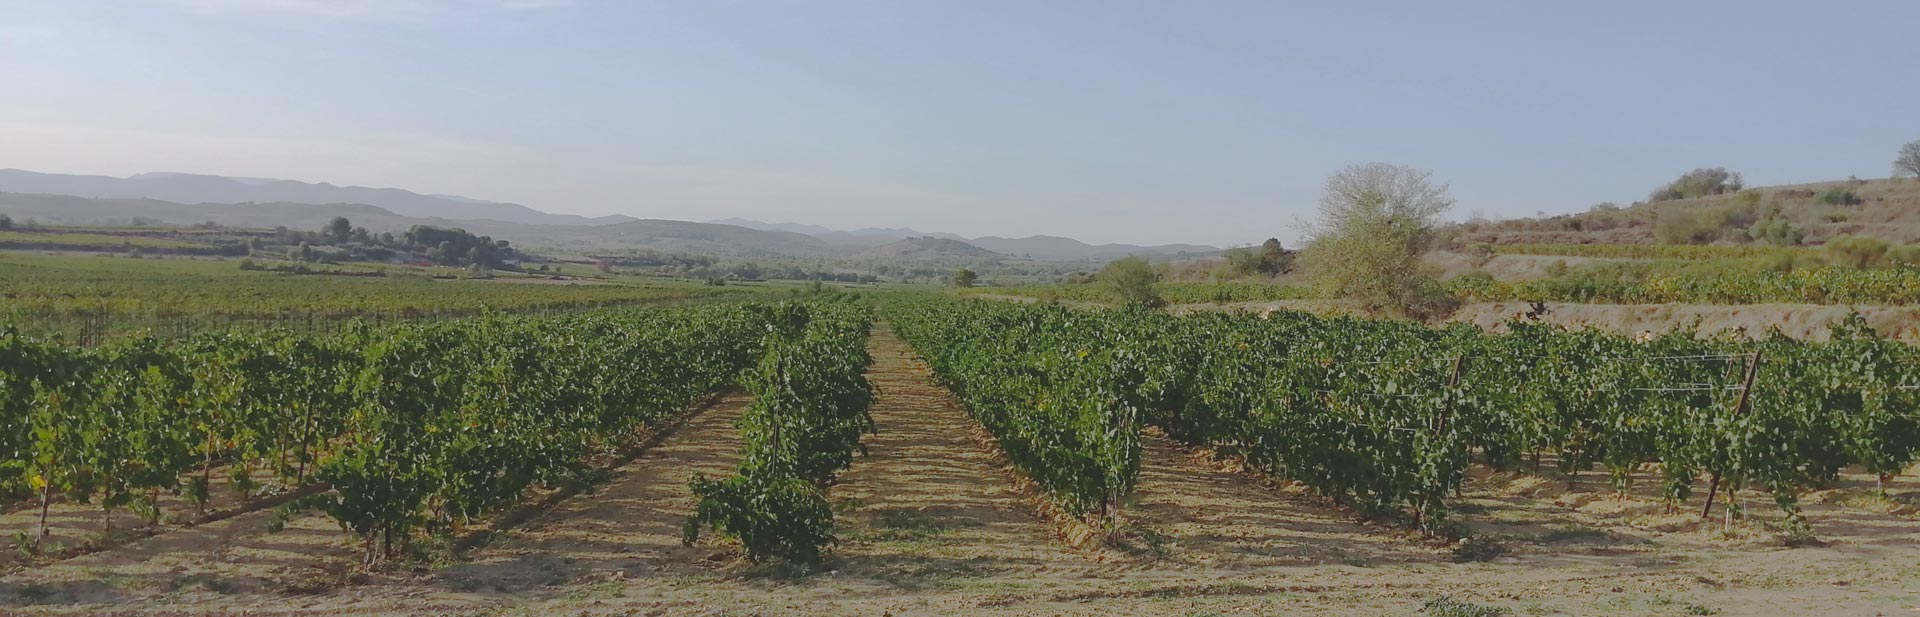 une parcelle du cépage Floréal blanc résistant du domaine desmaillé - développement durable et passion du producteur de vins